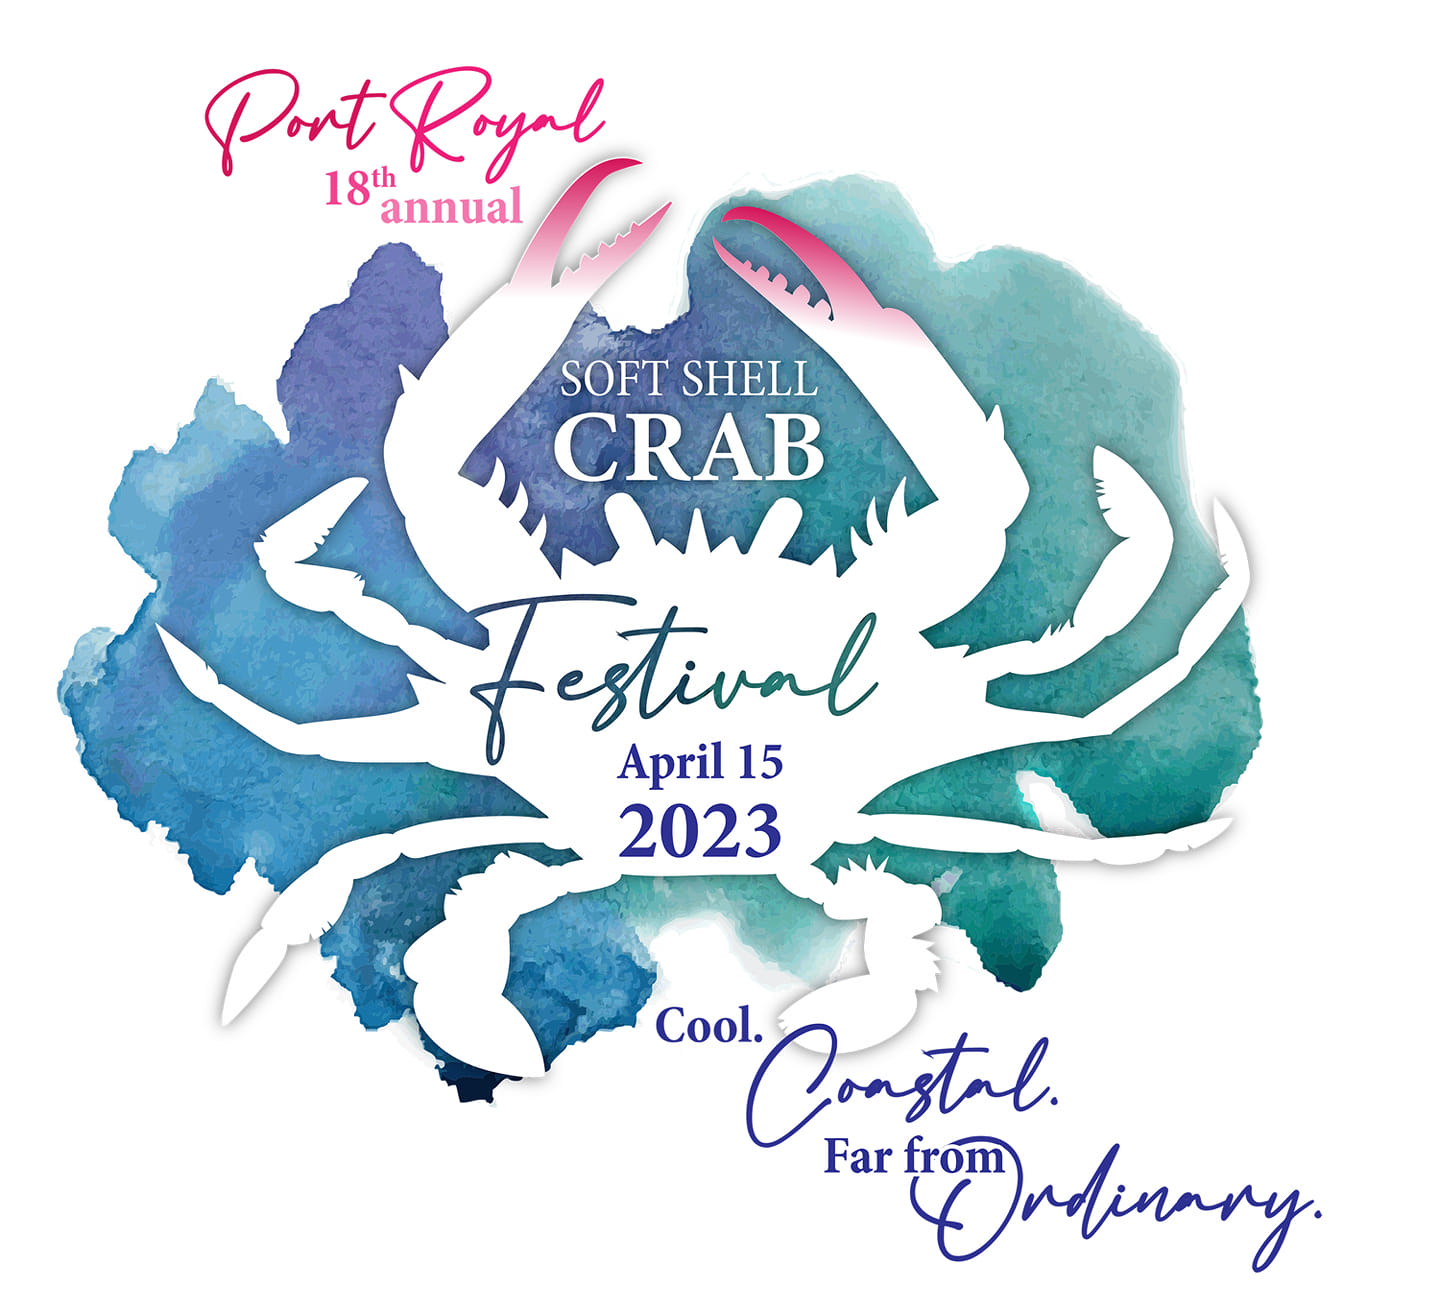 Softshell Crab Festival Image